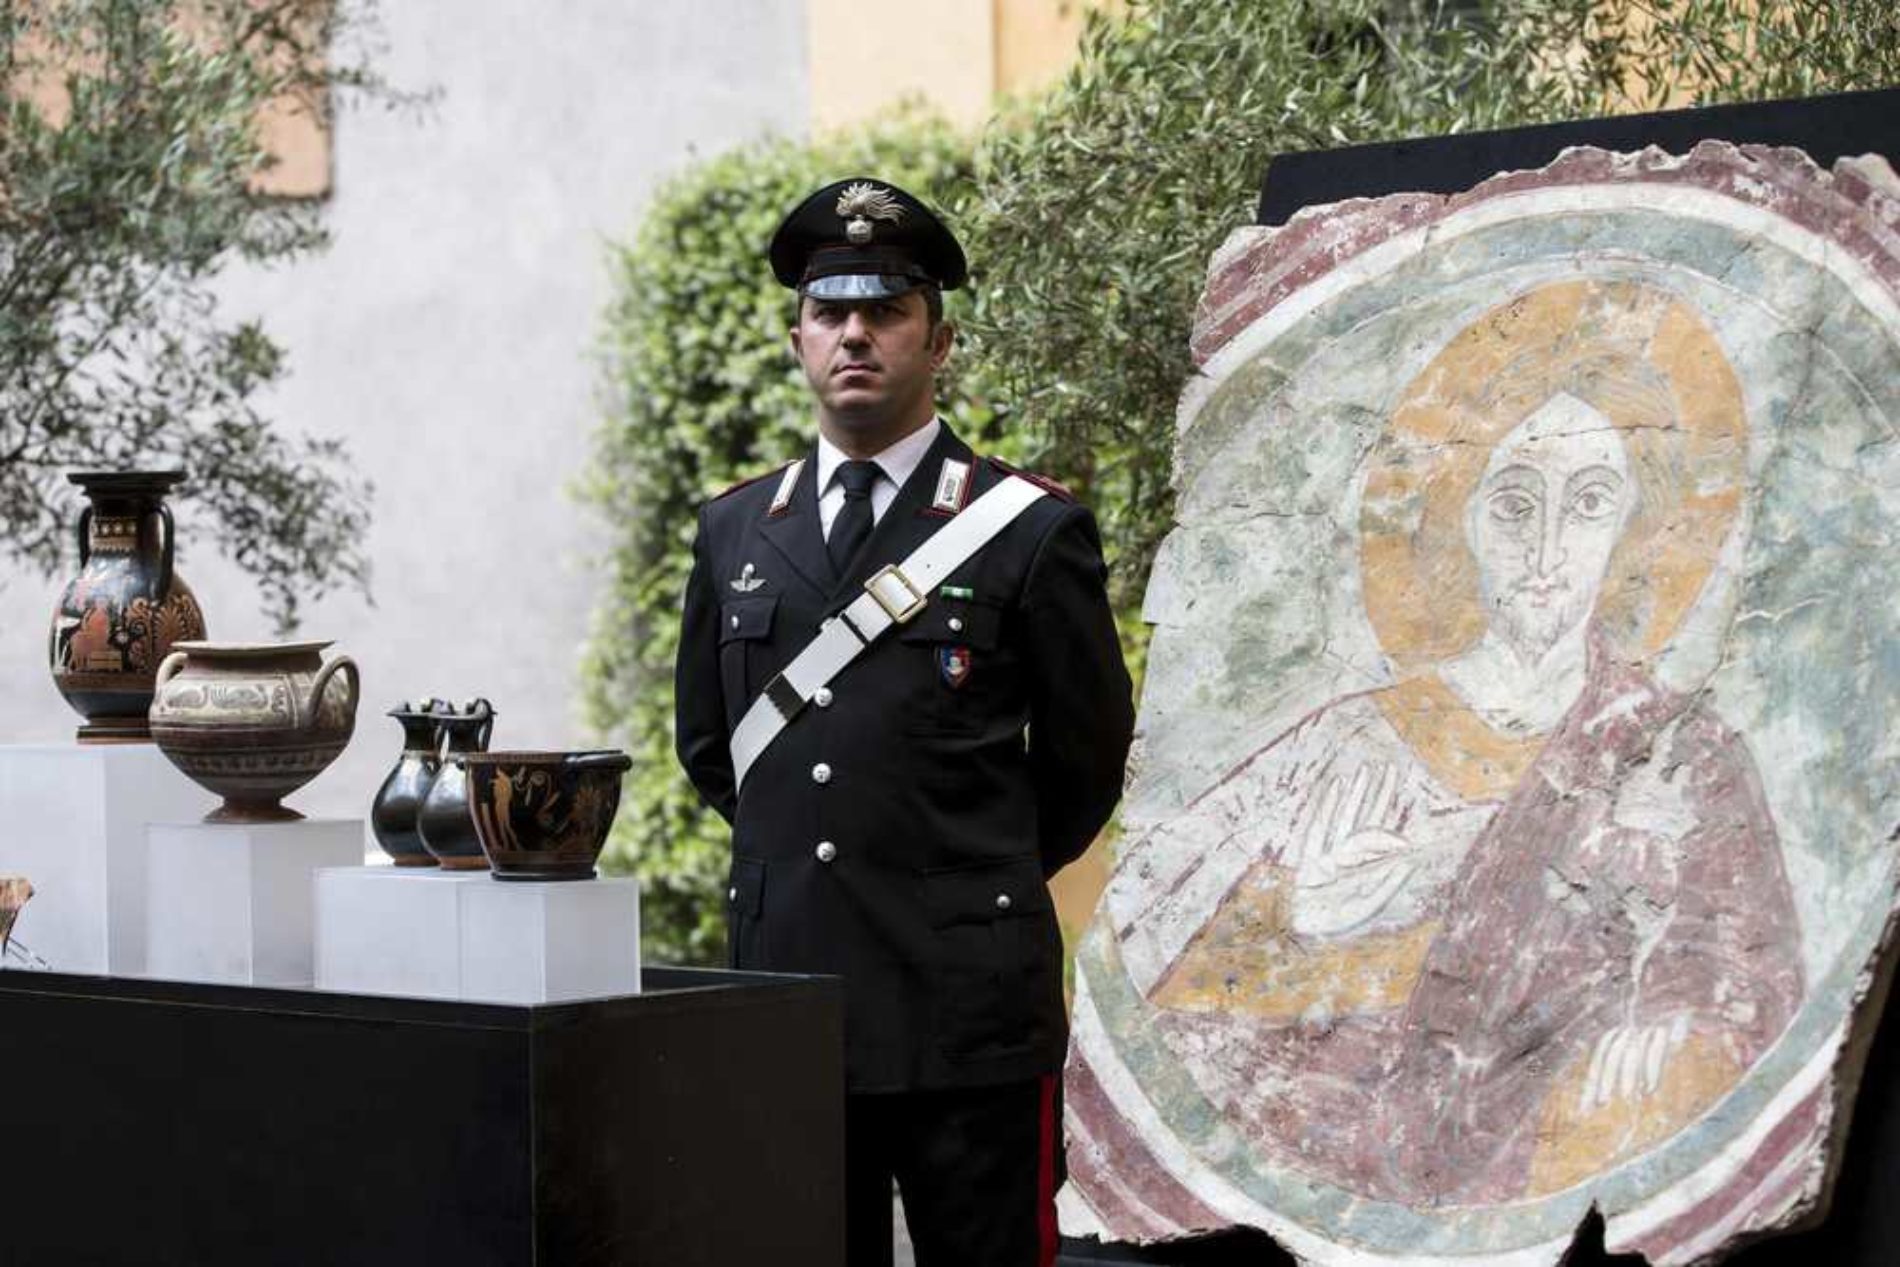 Restituzione di 25 opere dell’arte italiana dalle autorità statunitensi al patrimonio culturale italiano